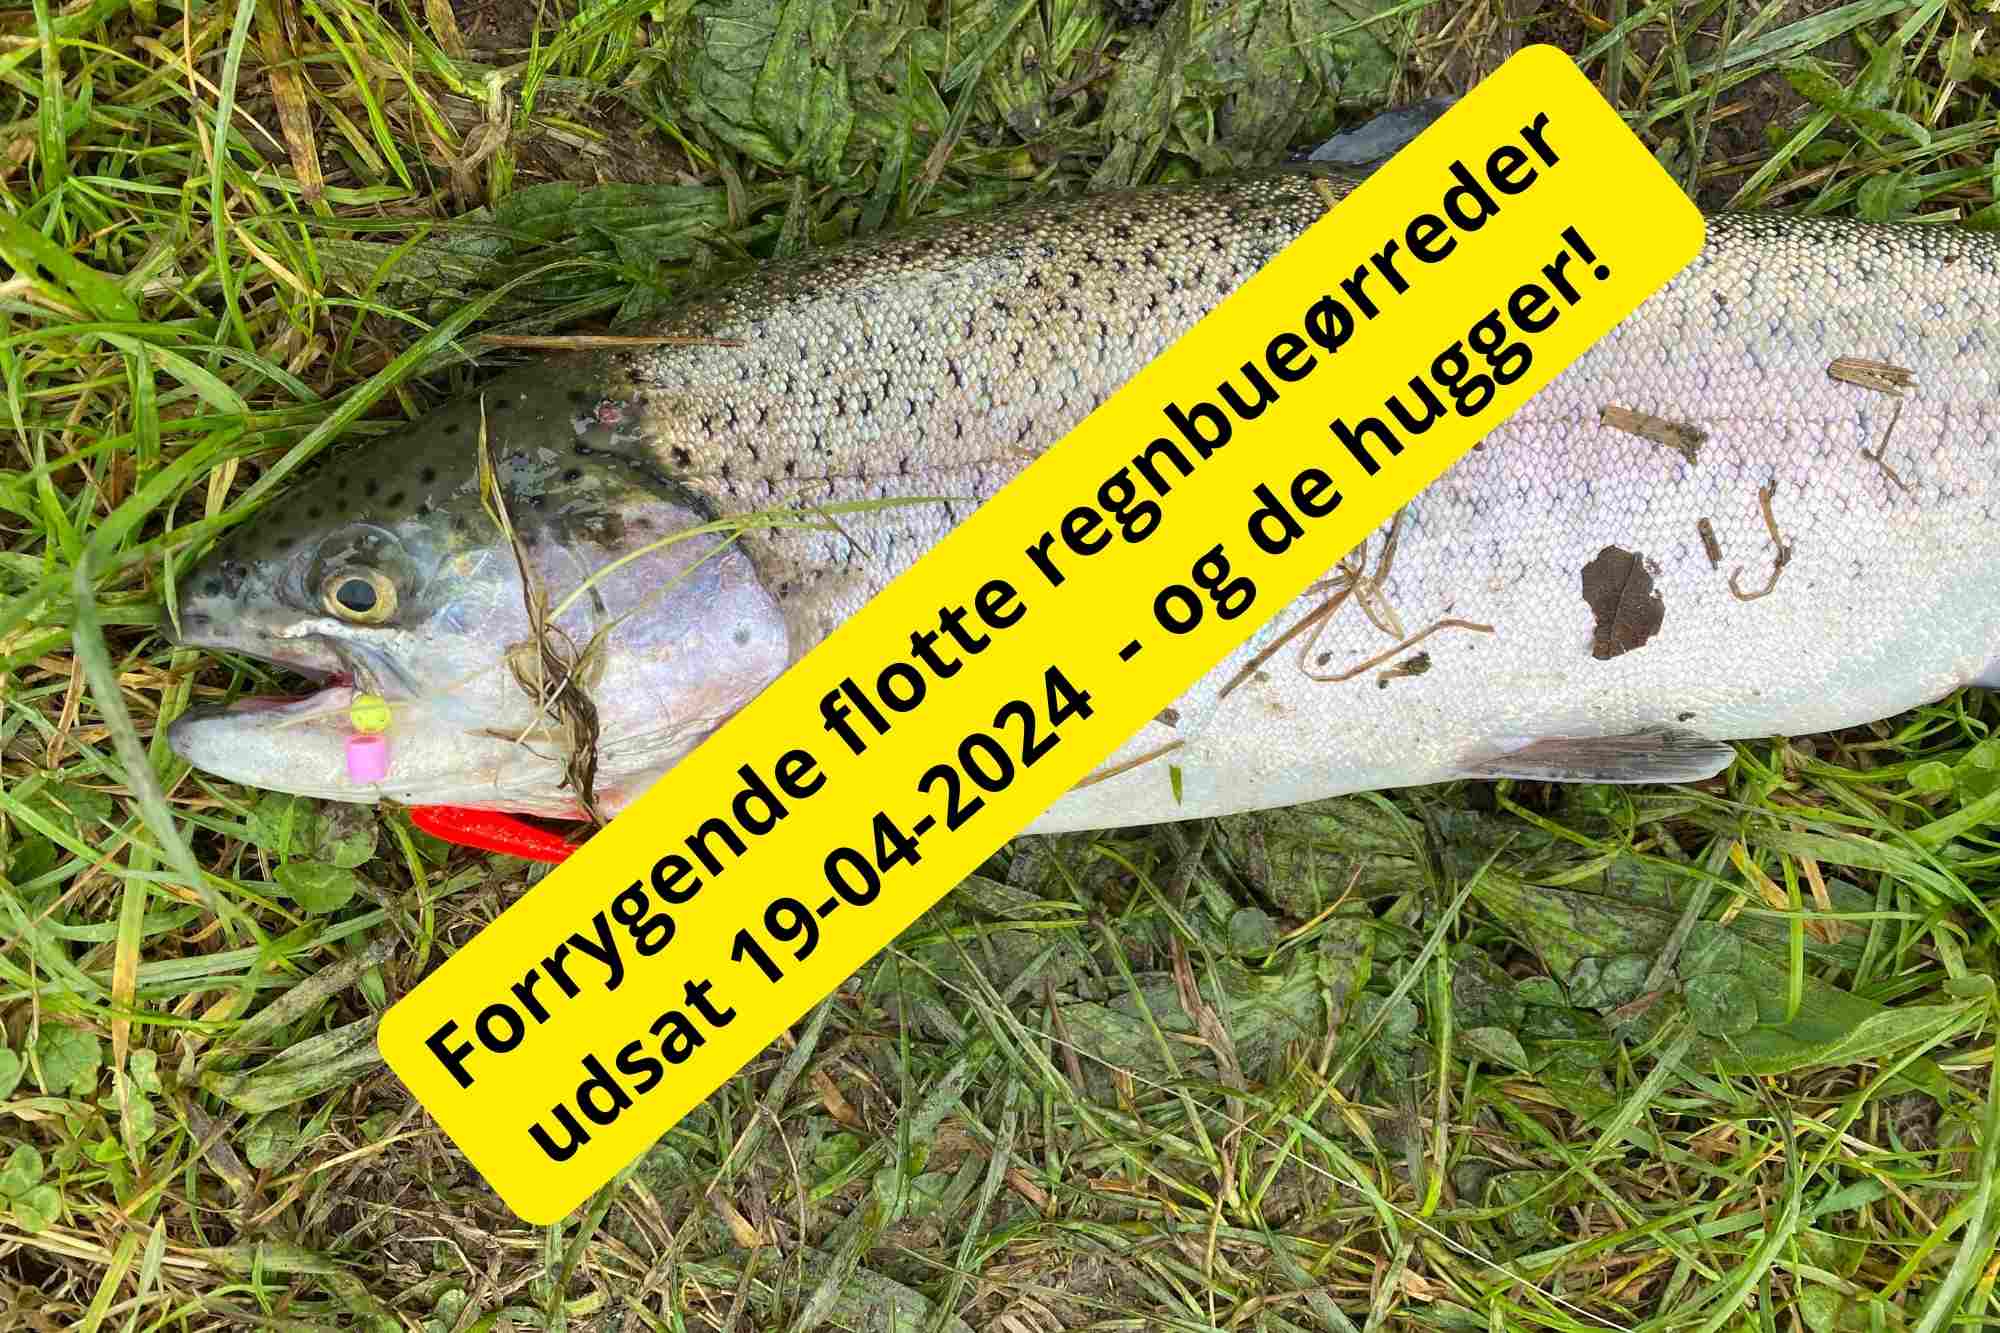 SE VIDEO: Mjøls Lystfiskeri Rødekro – Forrygende flotte regnbueørreder udsat fredag 19. april